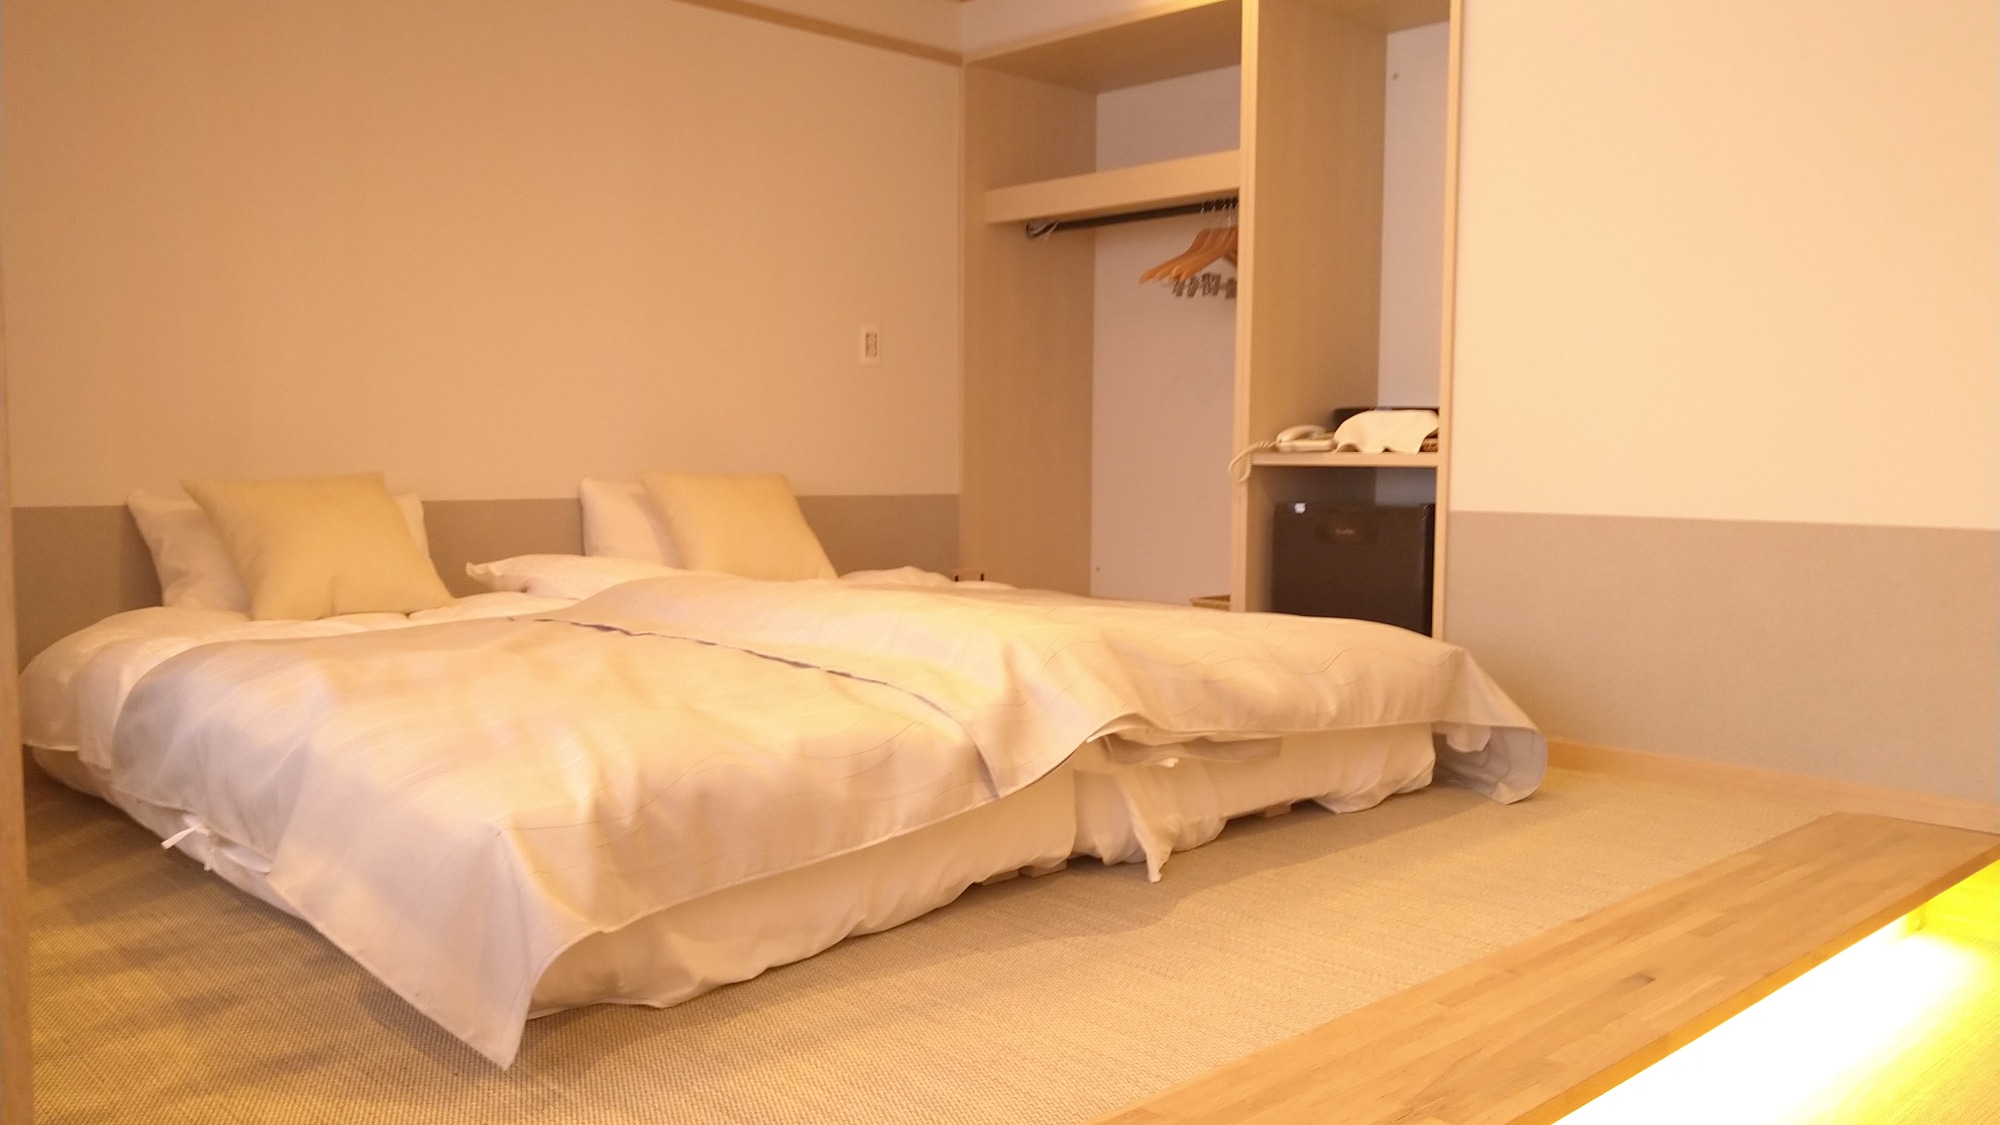 Reiwa เปิดเมื่อวันที่ 4 มีนาคม [ห้องเตียงแฝดสไตล์ญี่ปุ่นและตะวันตก] ห้องนอนเตี้ยขนาดเล็ก "Haruna" พร้อมห้องน้ำ